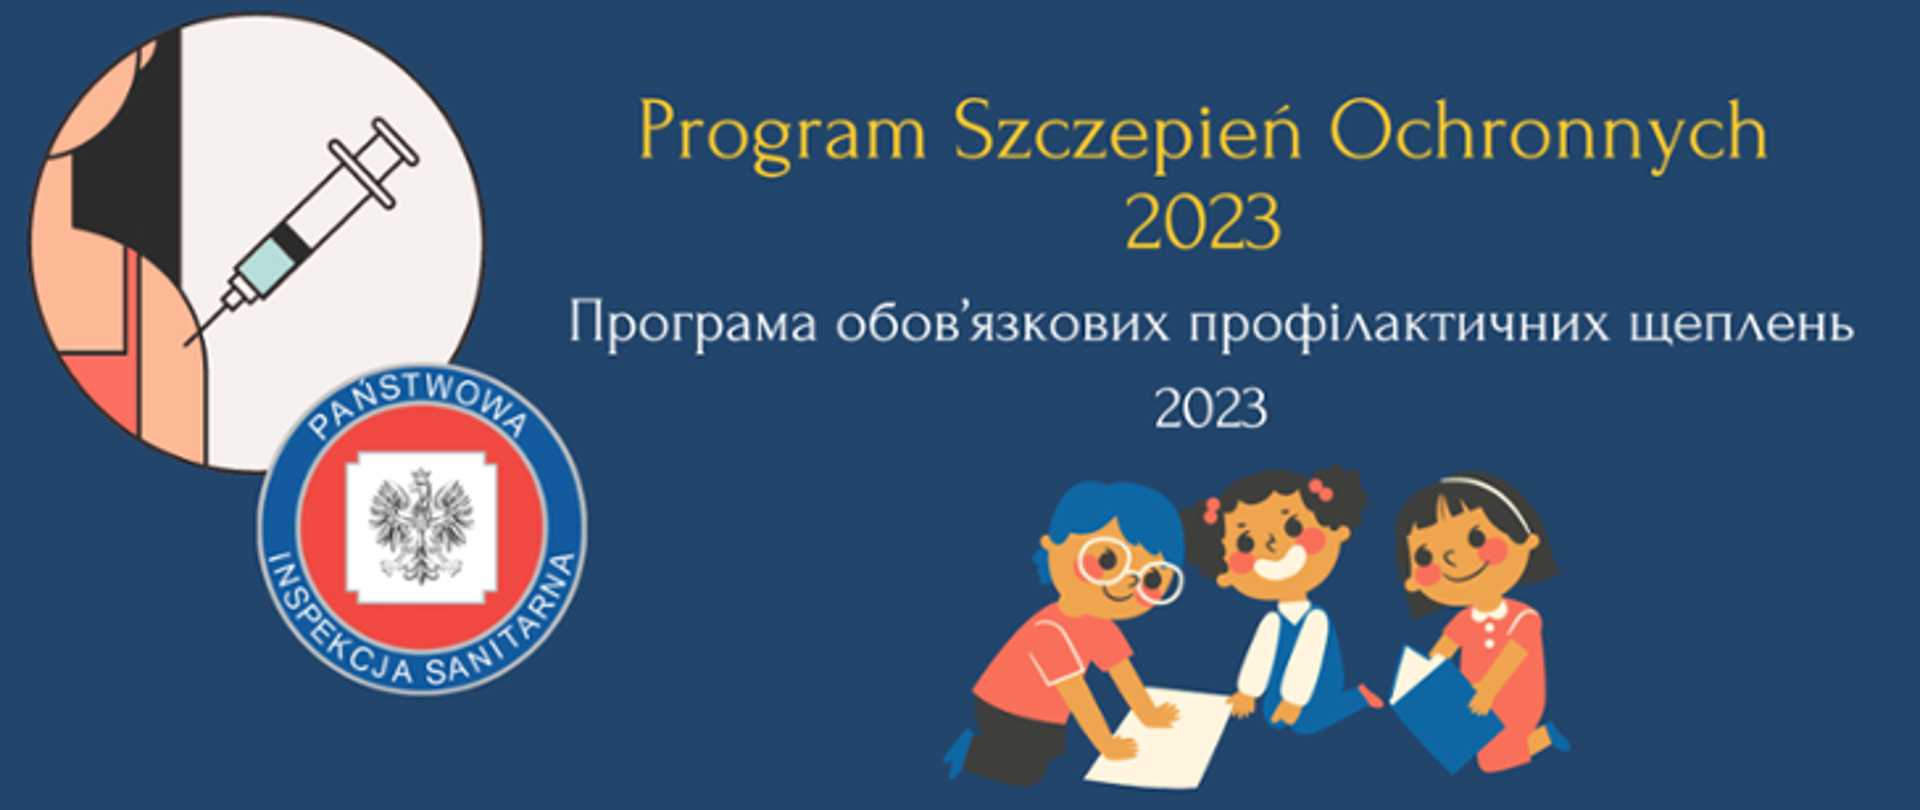 Program szczepień 2023